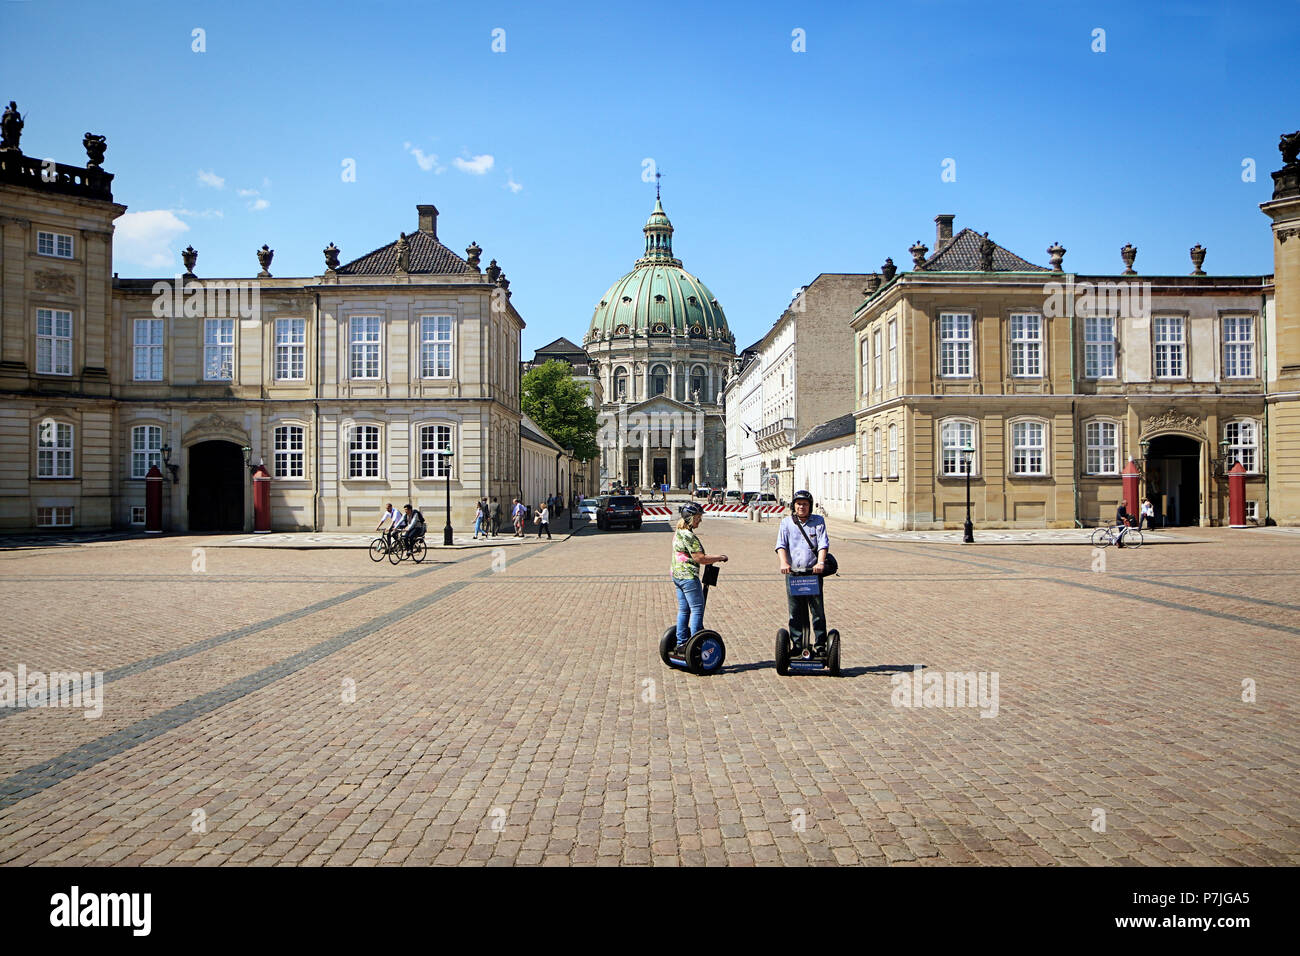 COPENHAGEN, Danimarca - 16 maggio 2018 il palazzo di Amalienborg square, residenza della regina danese, con il Frederik la chiesa (la Chiesa di Marmo) e un colpo di stato Foto Stock